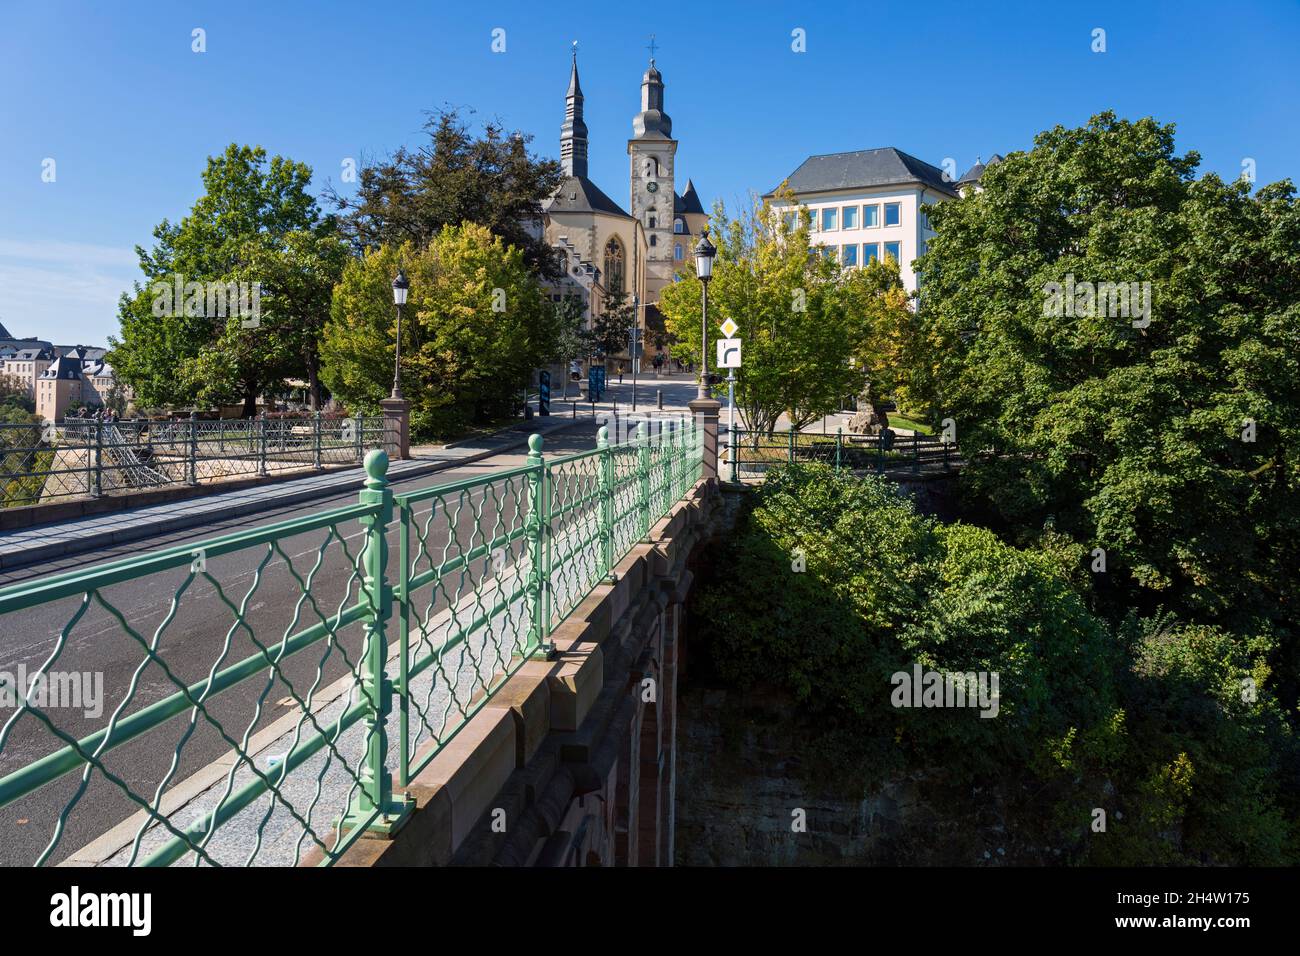 Europa, Luxemburg, Luxemburg-Stadt, die Pont du Chateau (Burgbrücke), die die Montée de Clausen in Richtung Église Saint-Michel führt Stockfoto